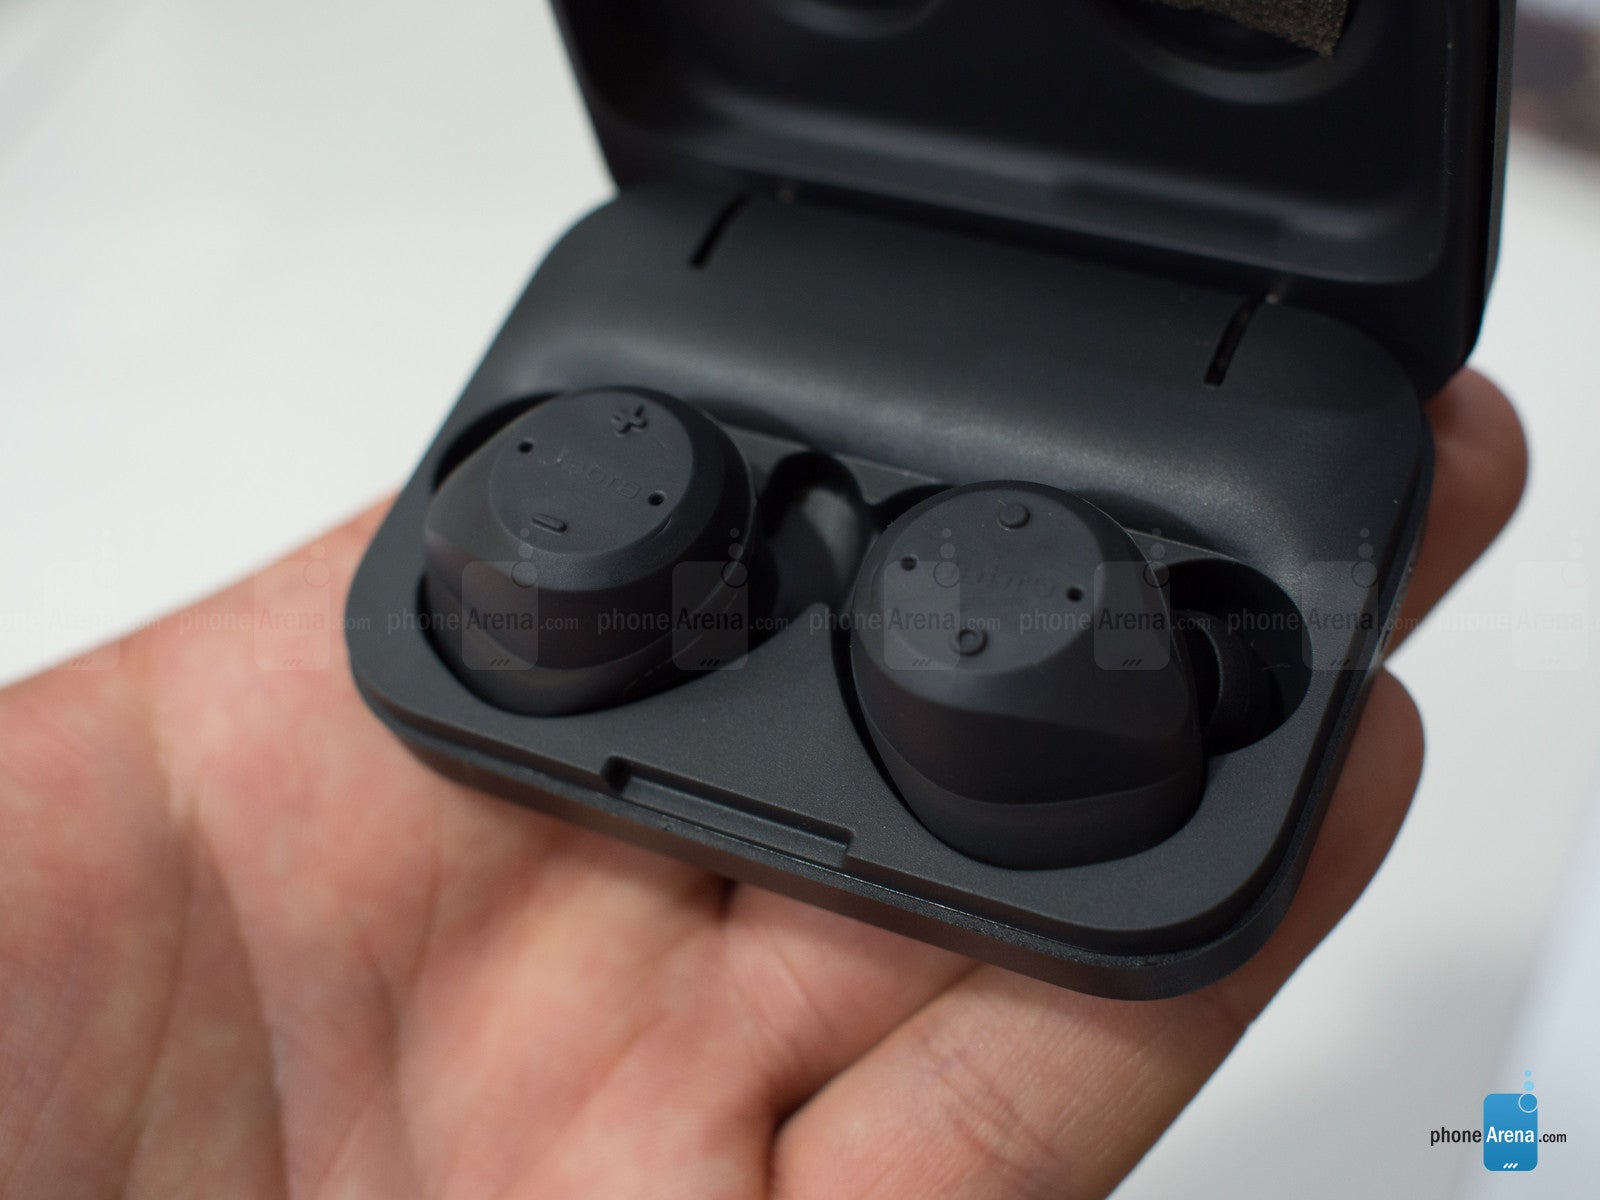 Jabra Elite Sport hands-on: light, sweat-proof, completely wireless earphones